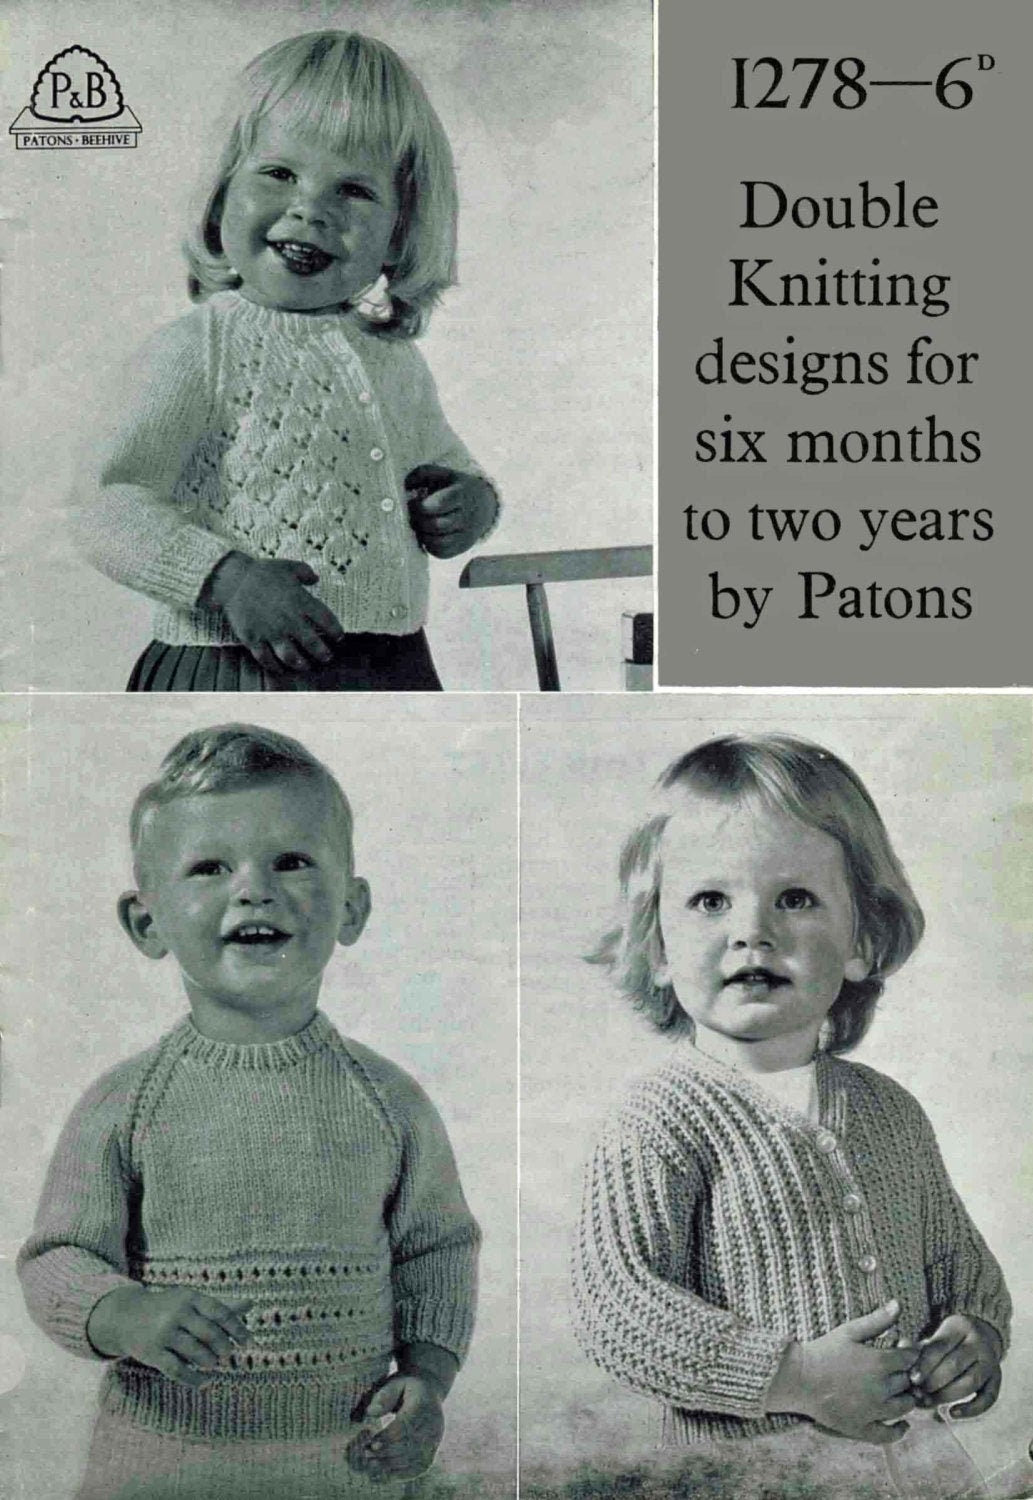 Toddler Cardigan, Jersey / Jumper, 6 months - 2 years, DK, 60s Knitting Pattern, P&B 1278